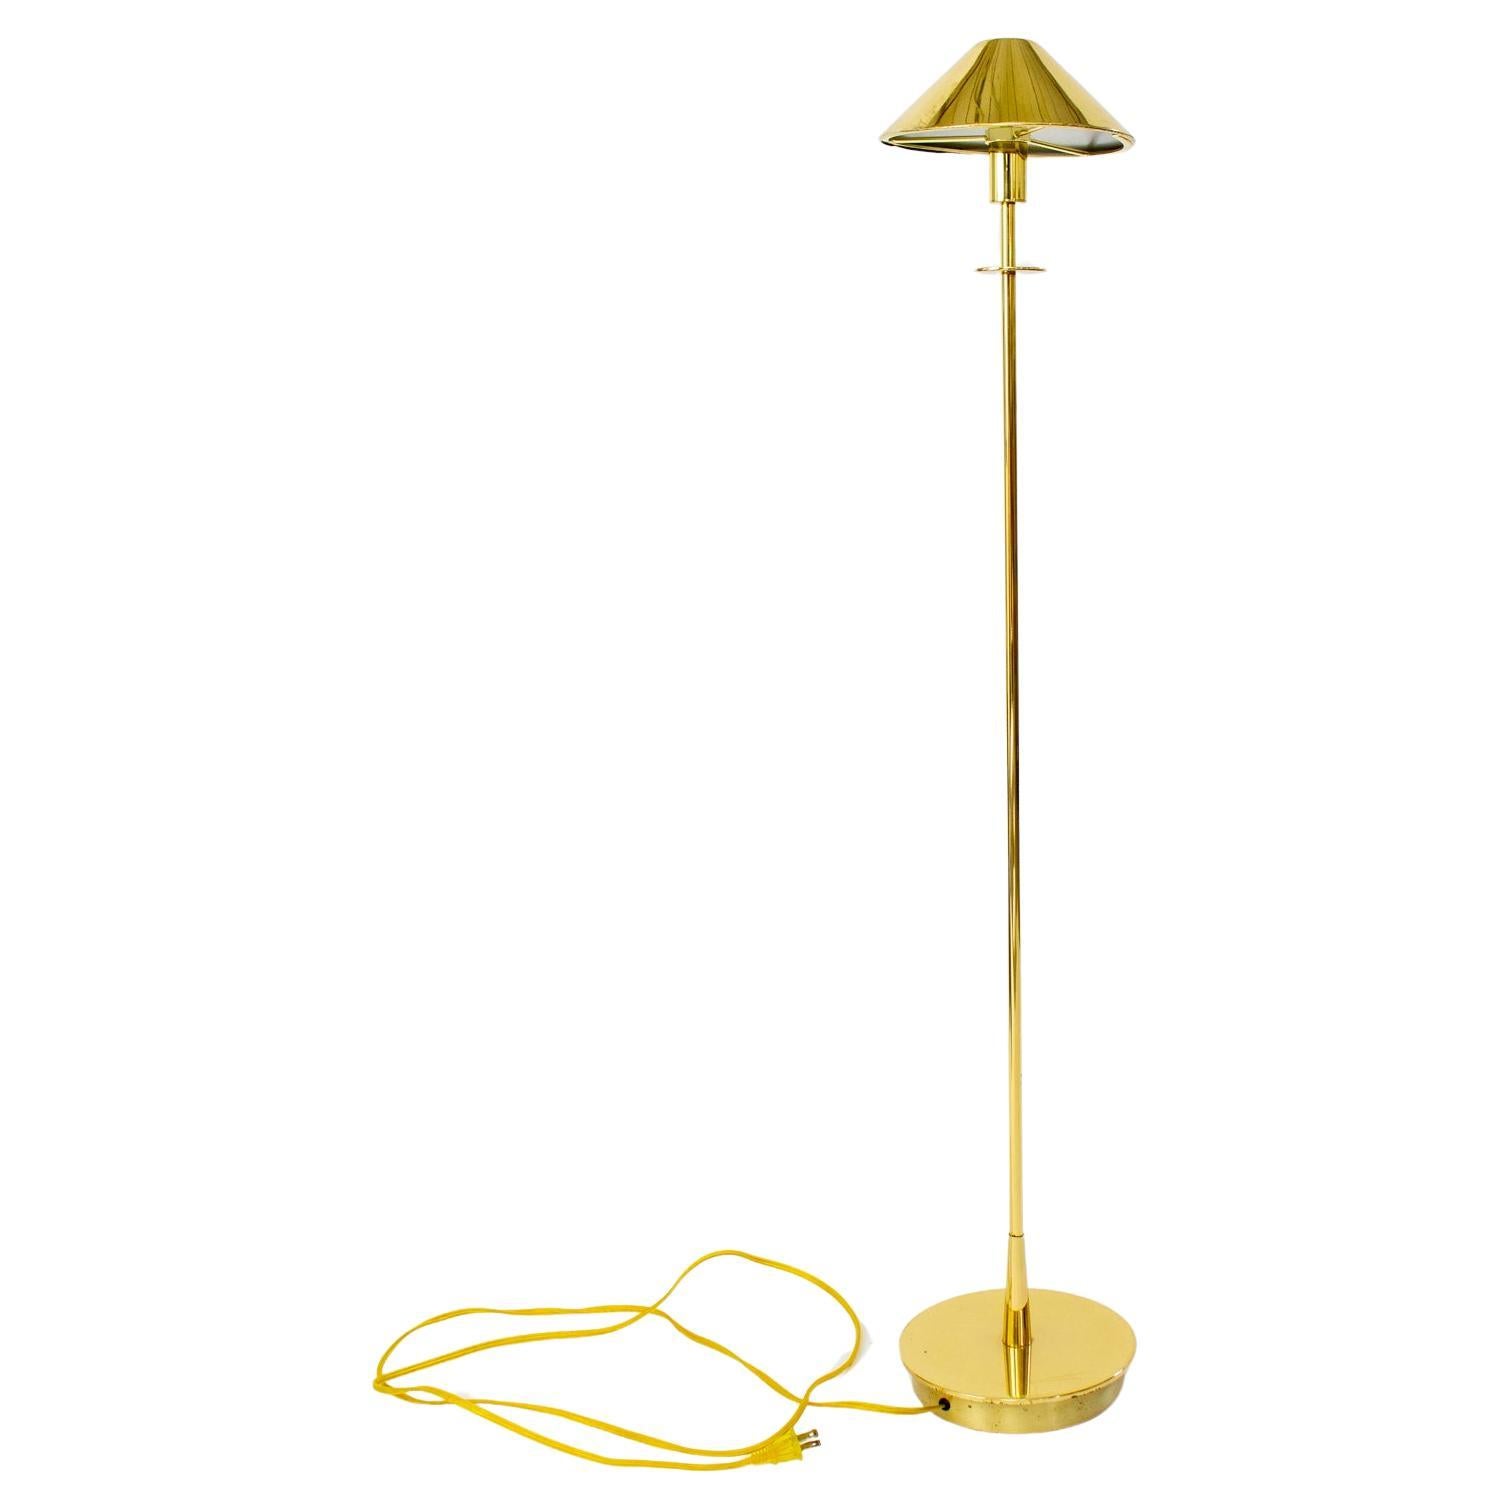 Holtkoetter German Halogen Brass Floor Lamp